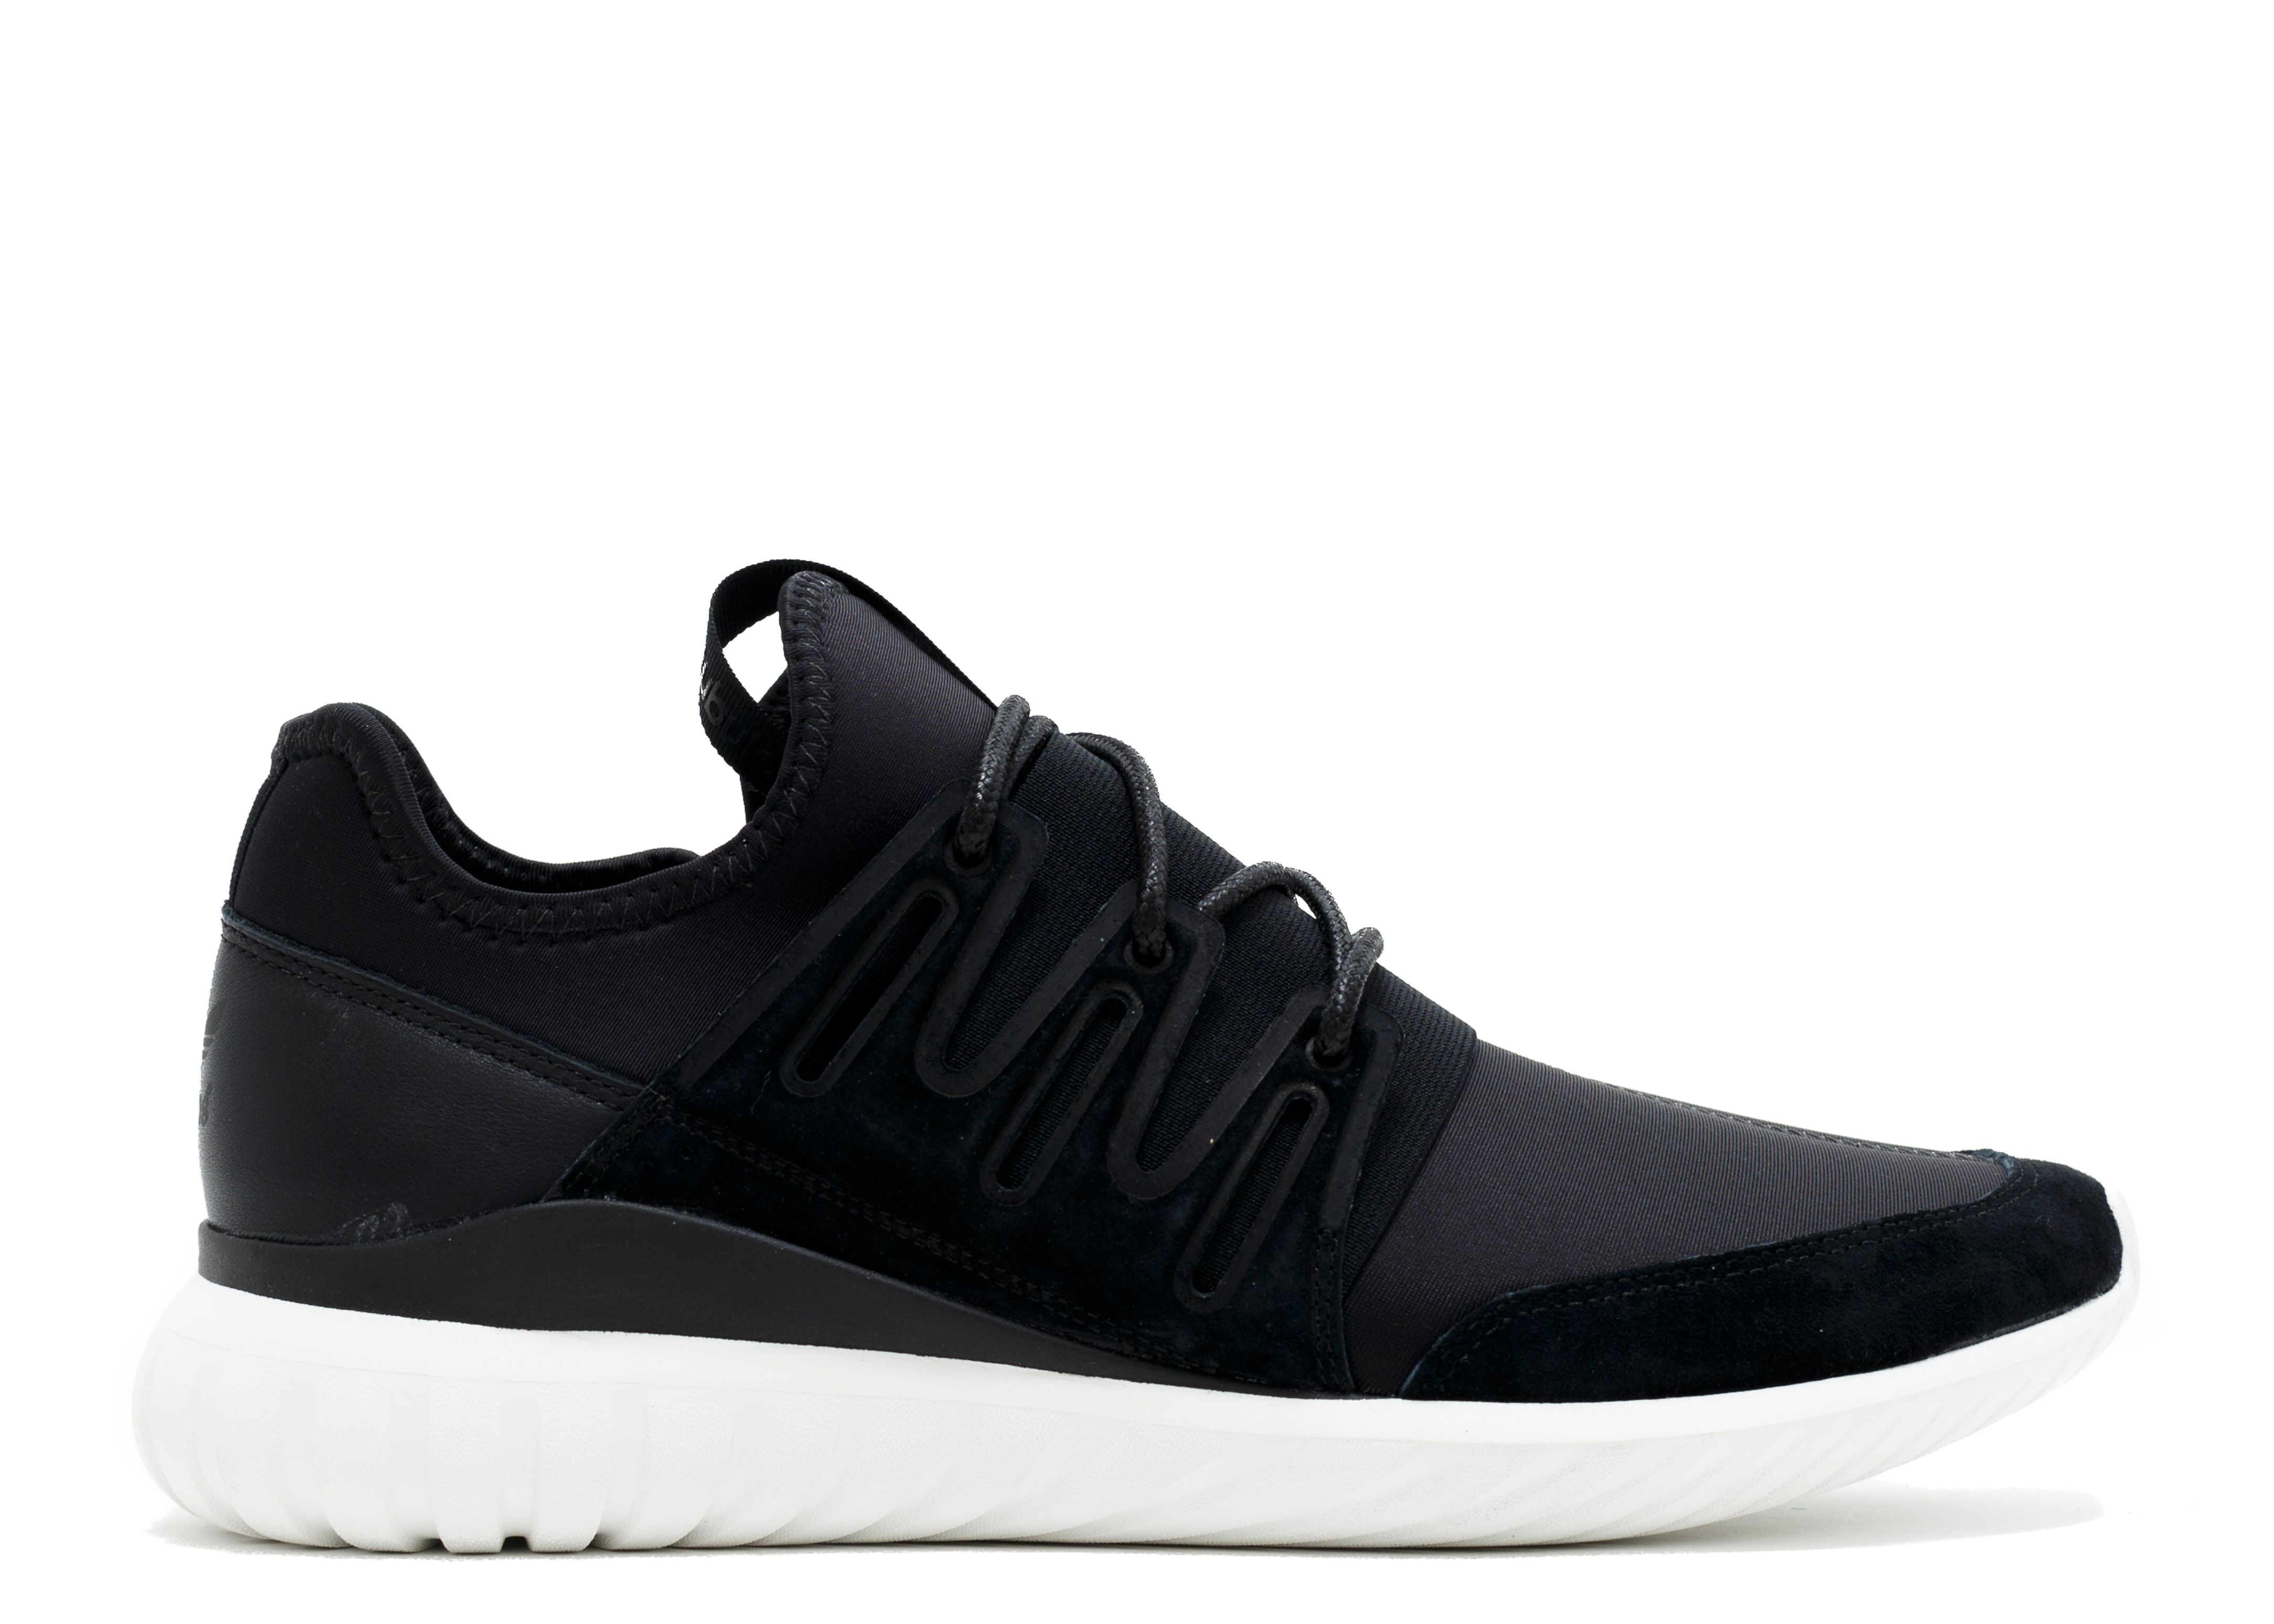 Adidas originals Tubular Defiant Low Top Sneakers in Black Lyst